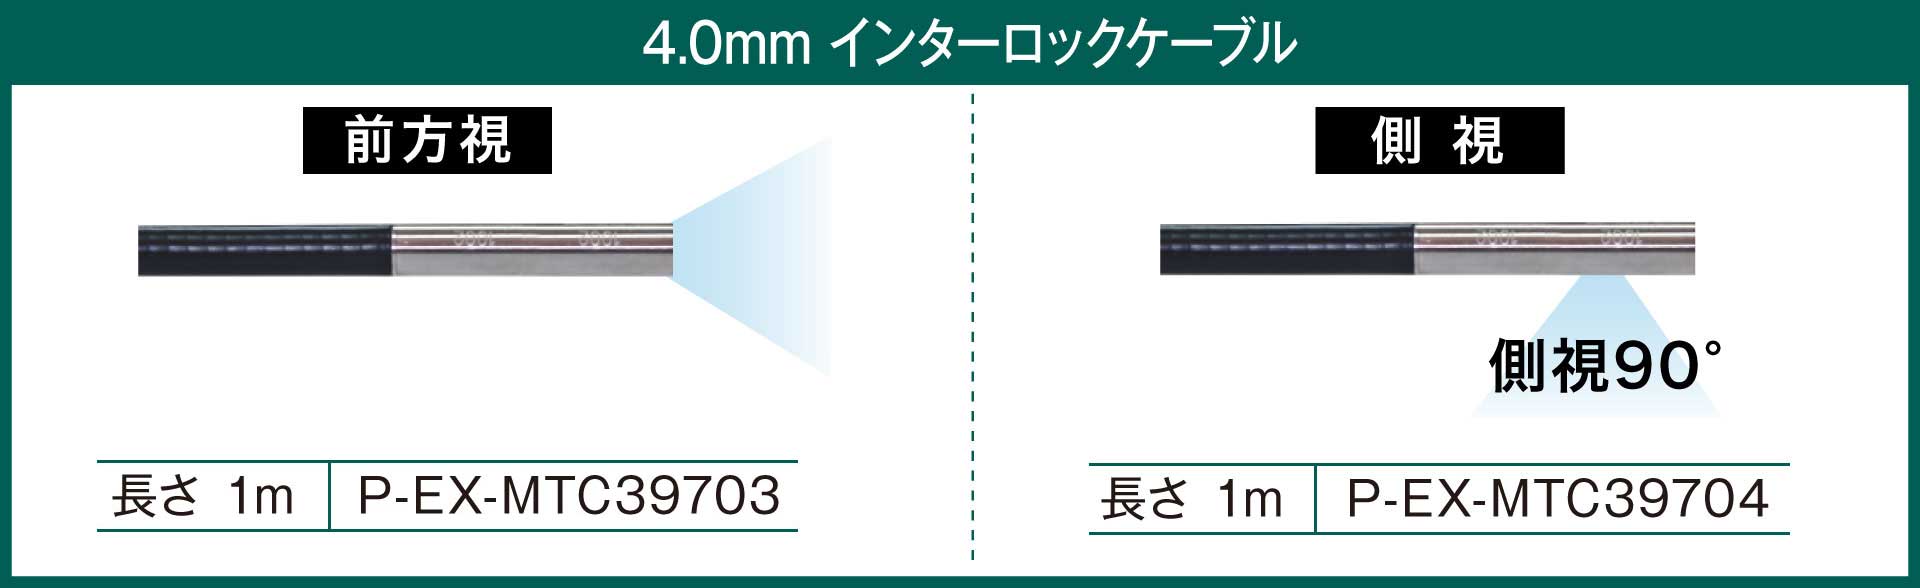 QV 4.0mm インターロックケーブル